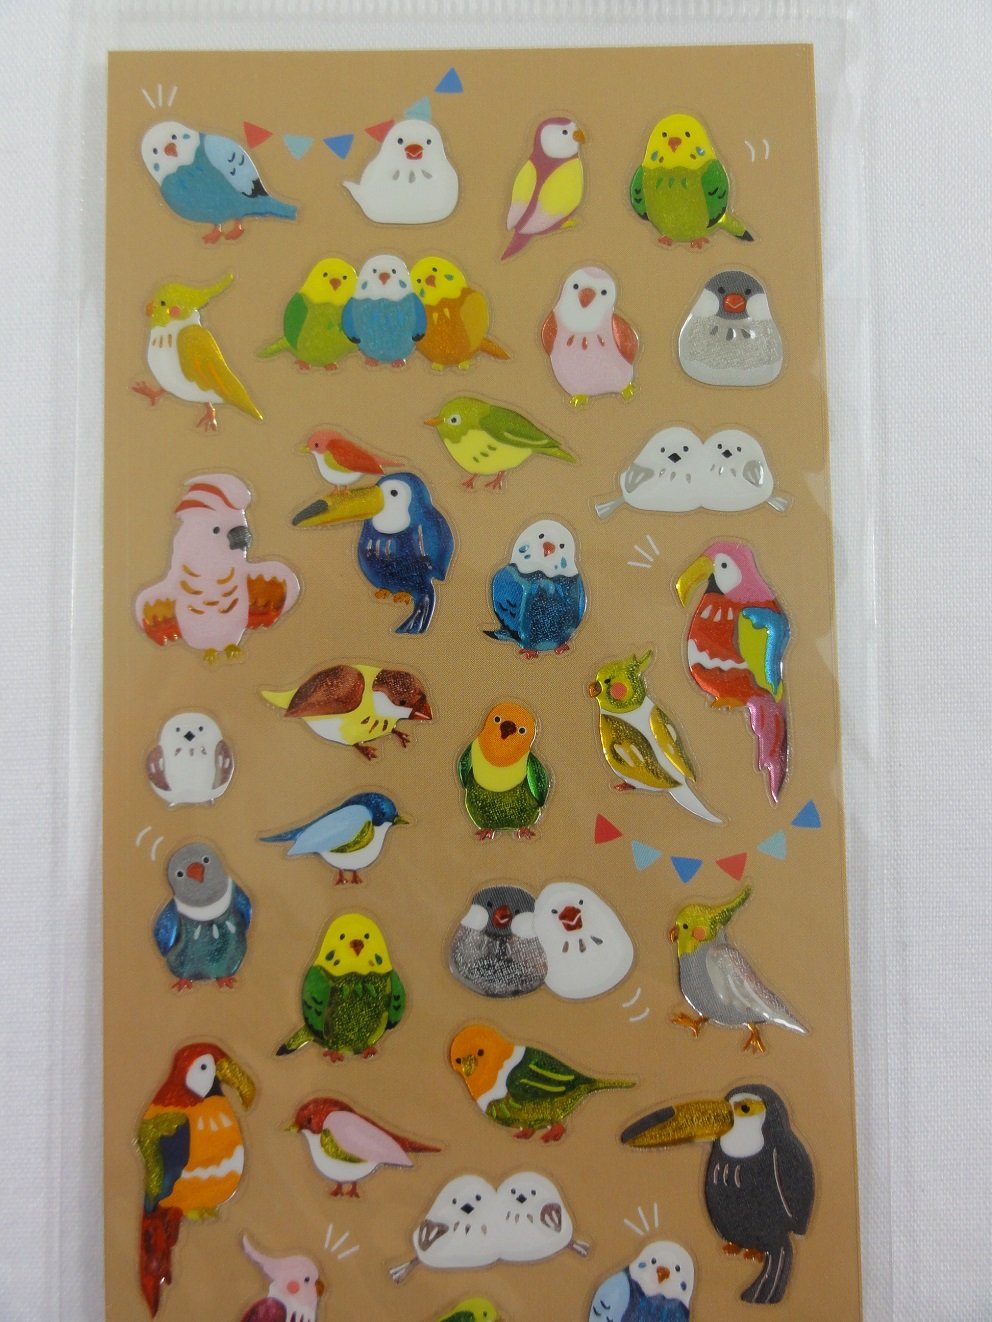 Cute Kawaii Mind Wave Birds Sticker Sheet - for Journal Planner Craft Organizer Scrapbook Notebook